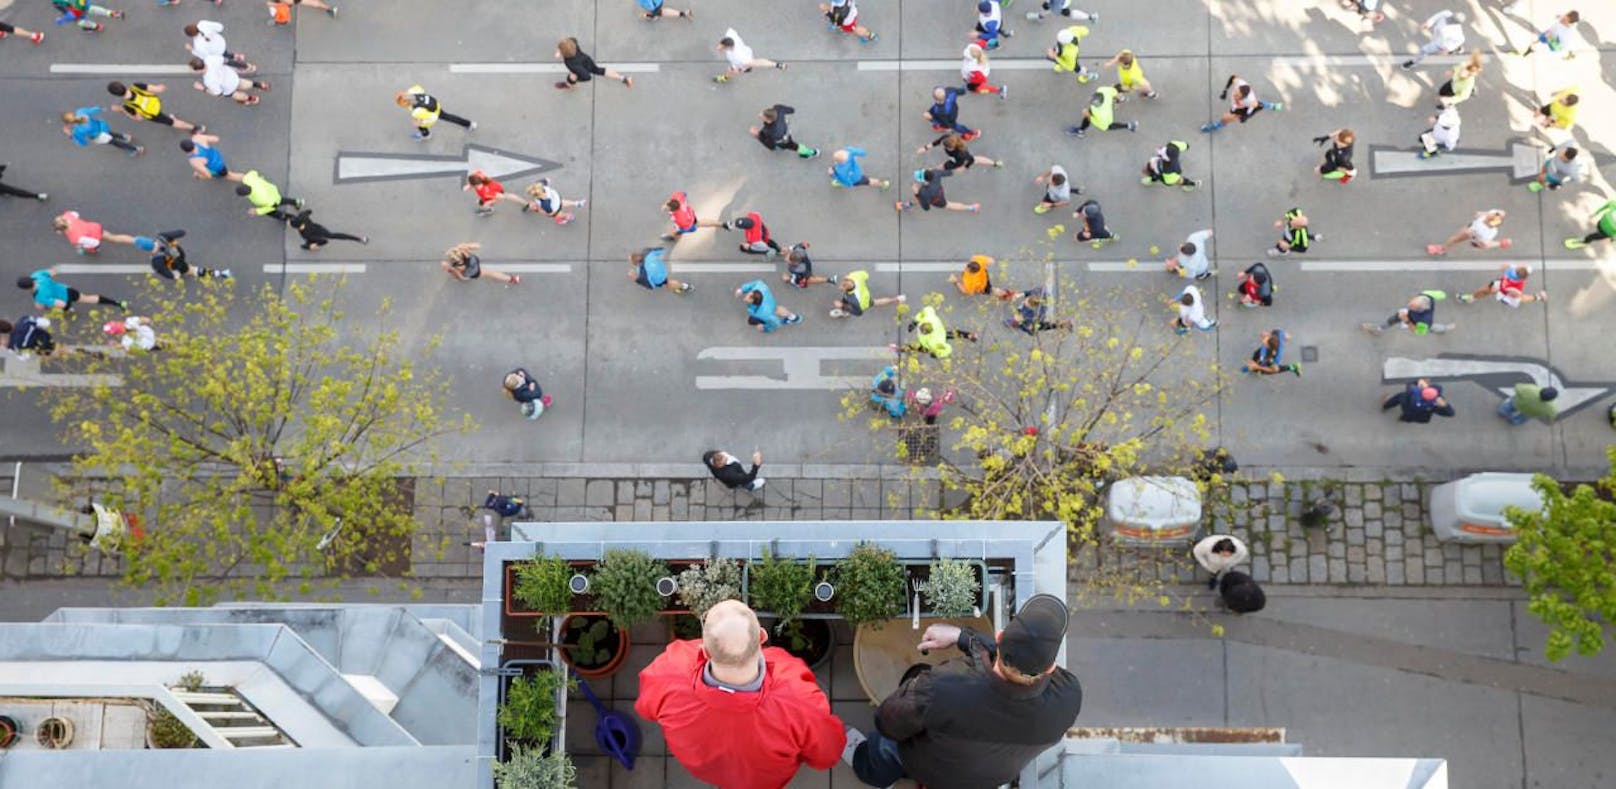 Wir suchen Fotos aus spannenden Perspektiven  wie erlebst du den Vienna City Marathon 2019?